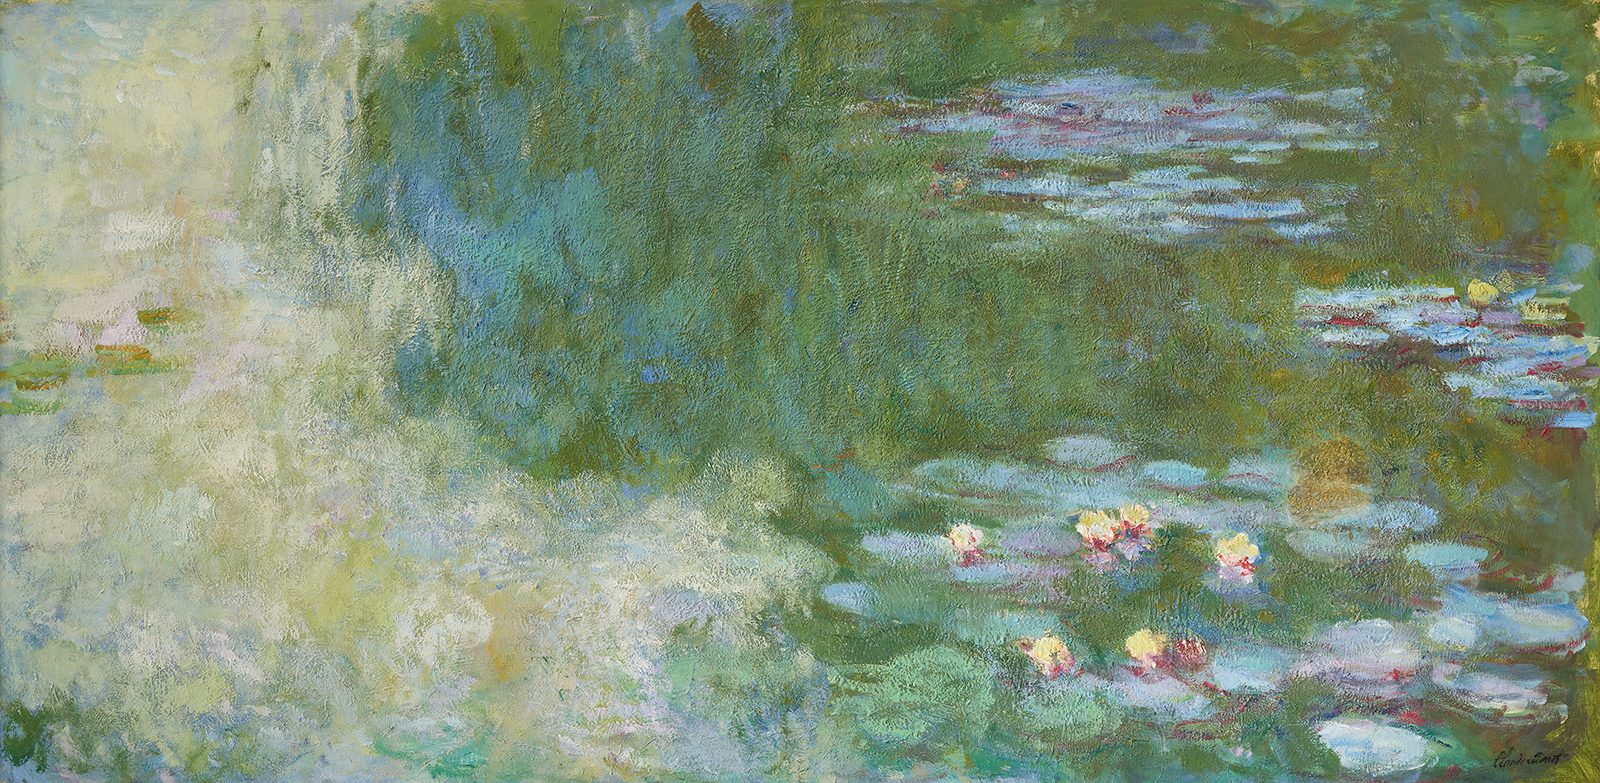 클로드 모네, ‹수련이 있는 연못(The Water-Lily Pond)›(1917~1920) 
캔버스에 유채, 100x200.5cm, 국립현대미술관 이건희컬렉션.